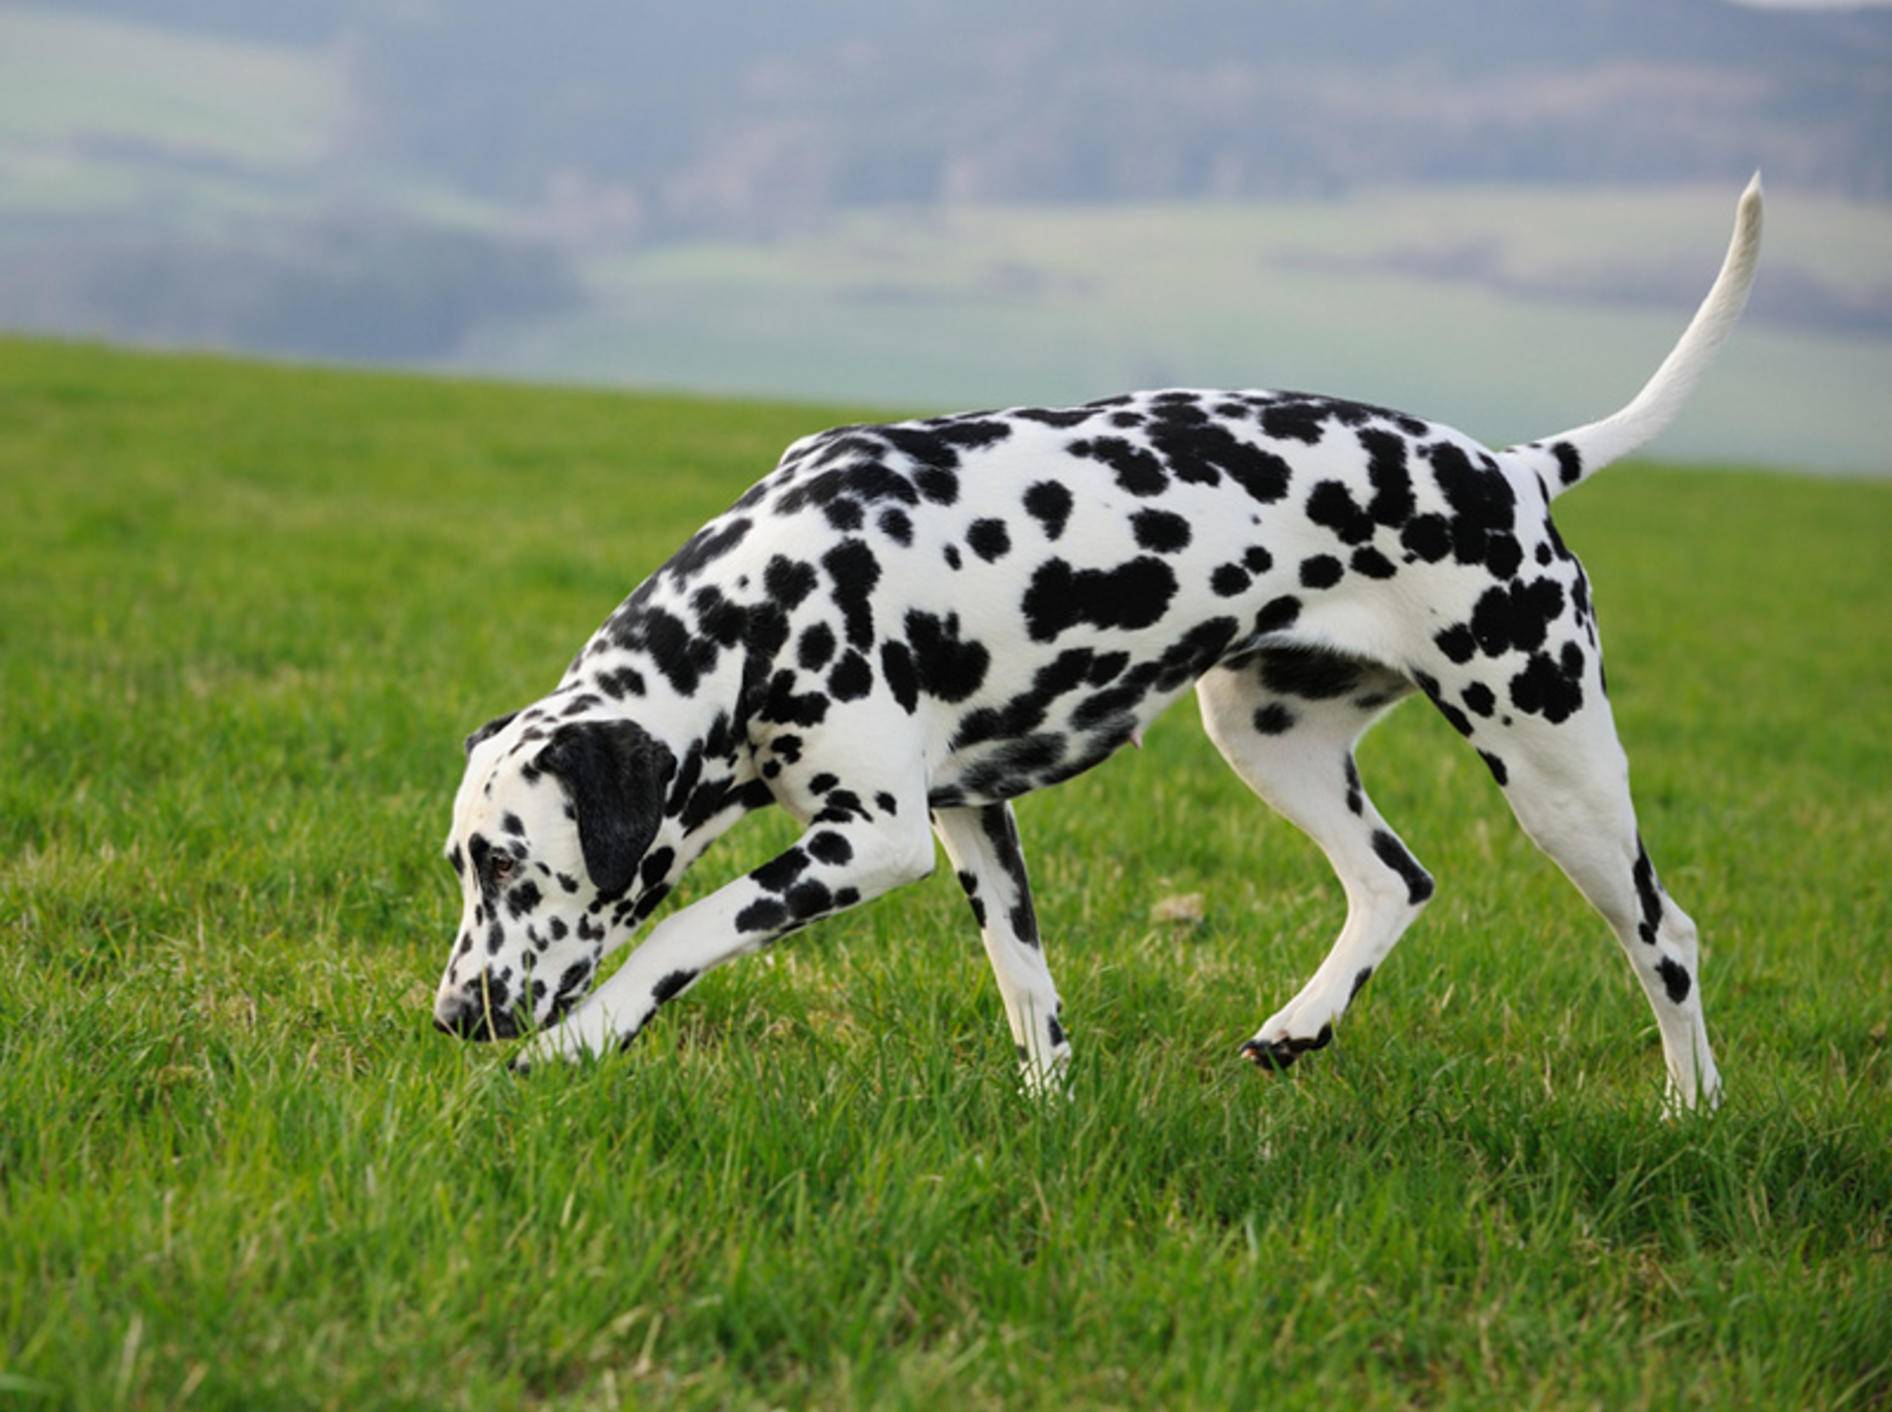 Damit Ihr Hund sicher durchs Gras schnüffeln kann, ist Anti-Giftköder-Training wichtig – anetapics/Shutterstock